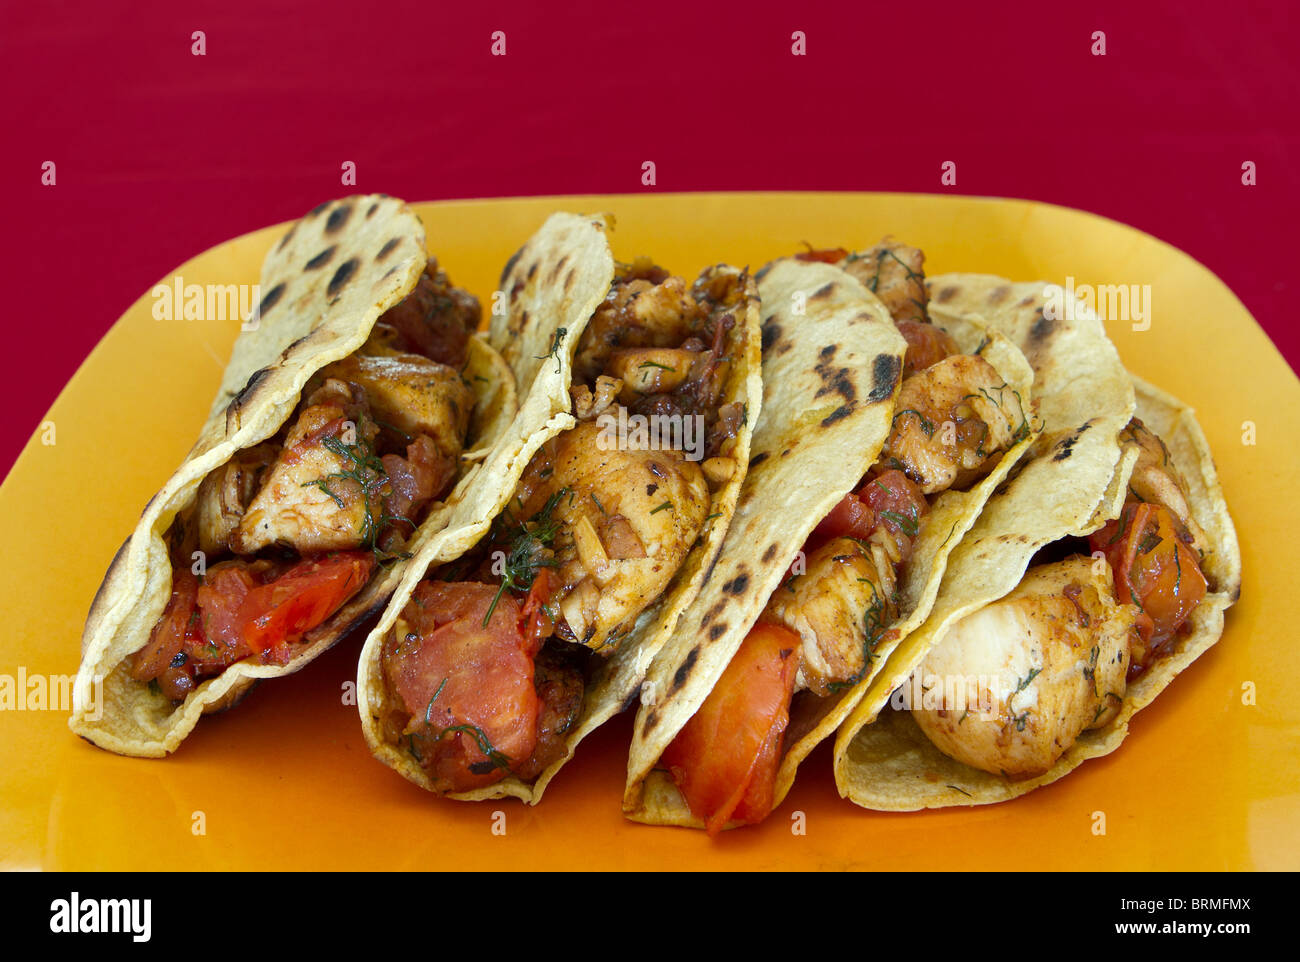 Tacos de poulet à la tomate et herbes complète sur une plaque jaune Banque D'Images